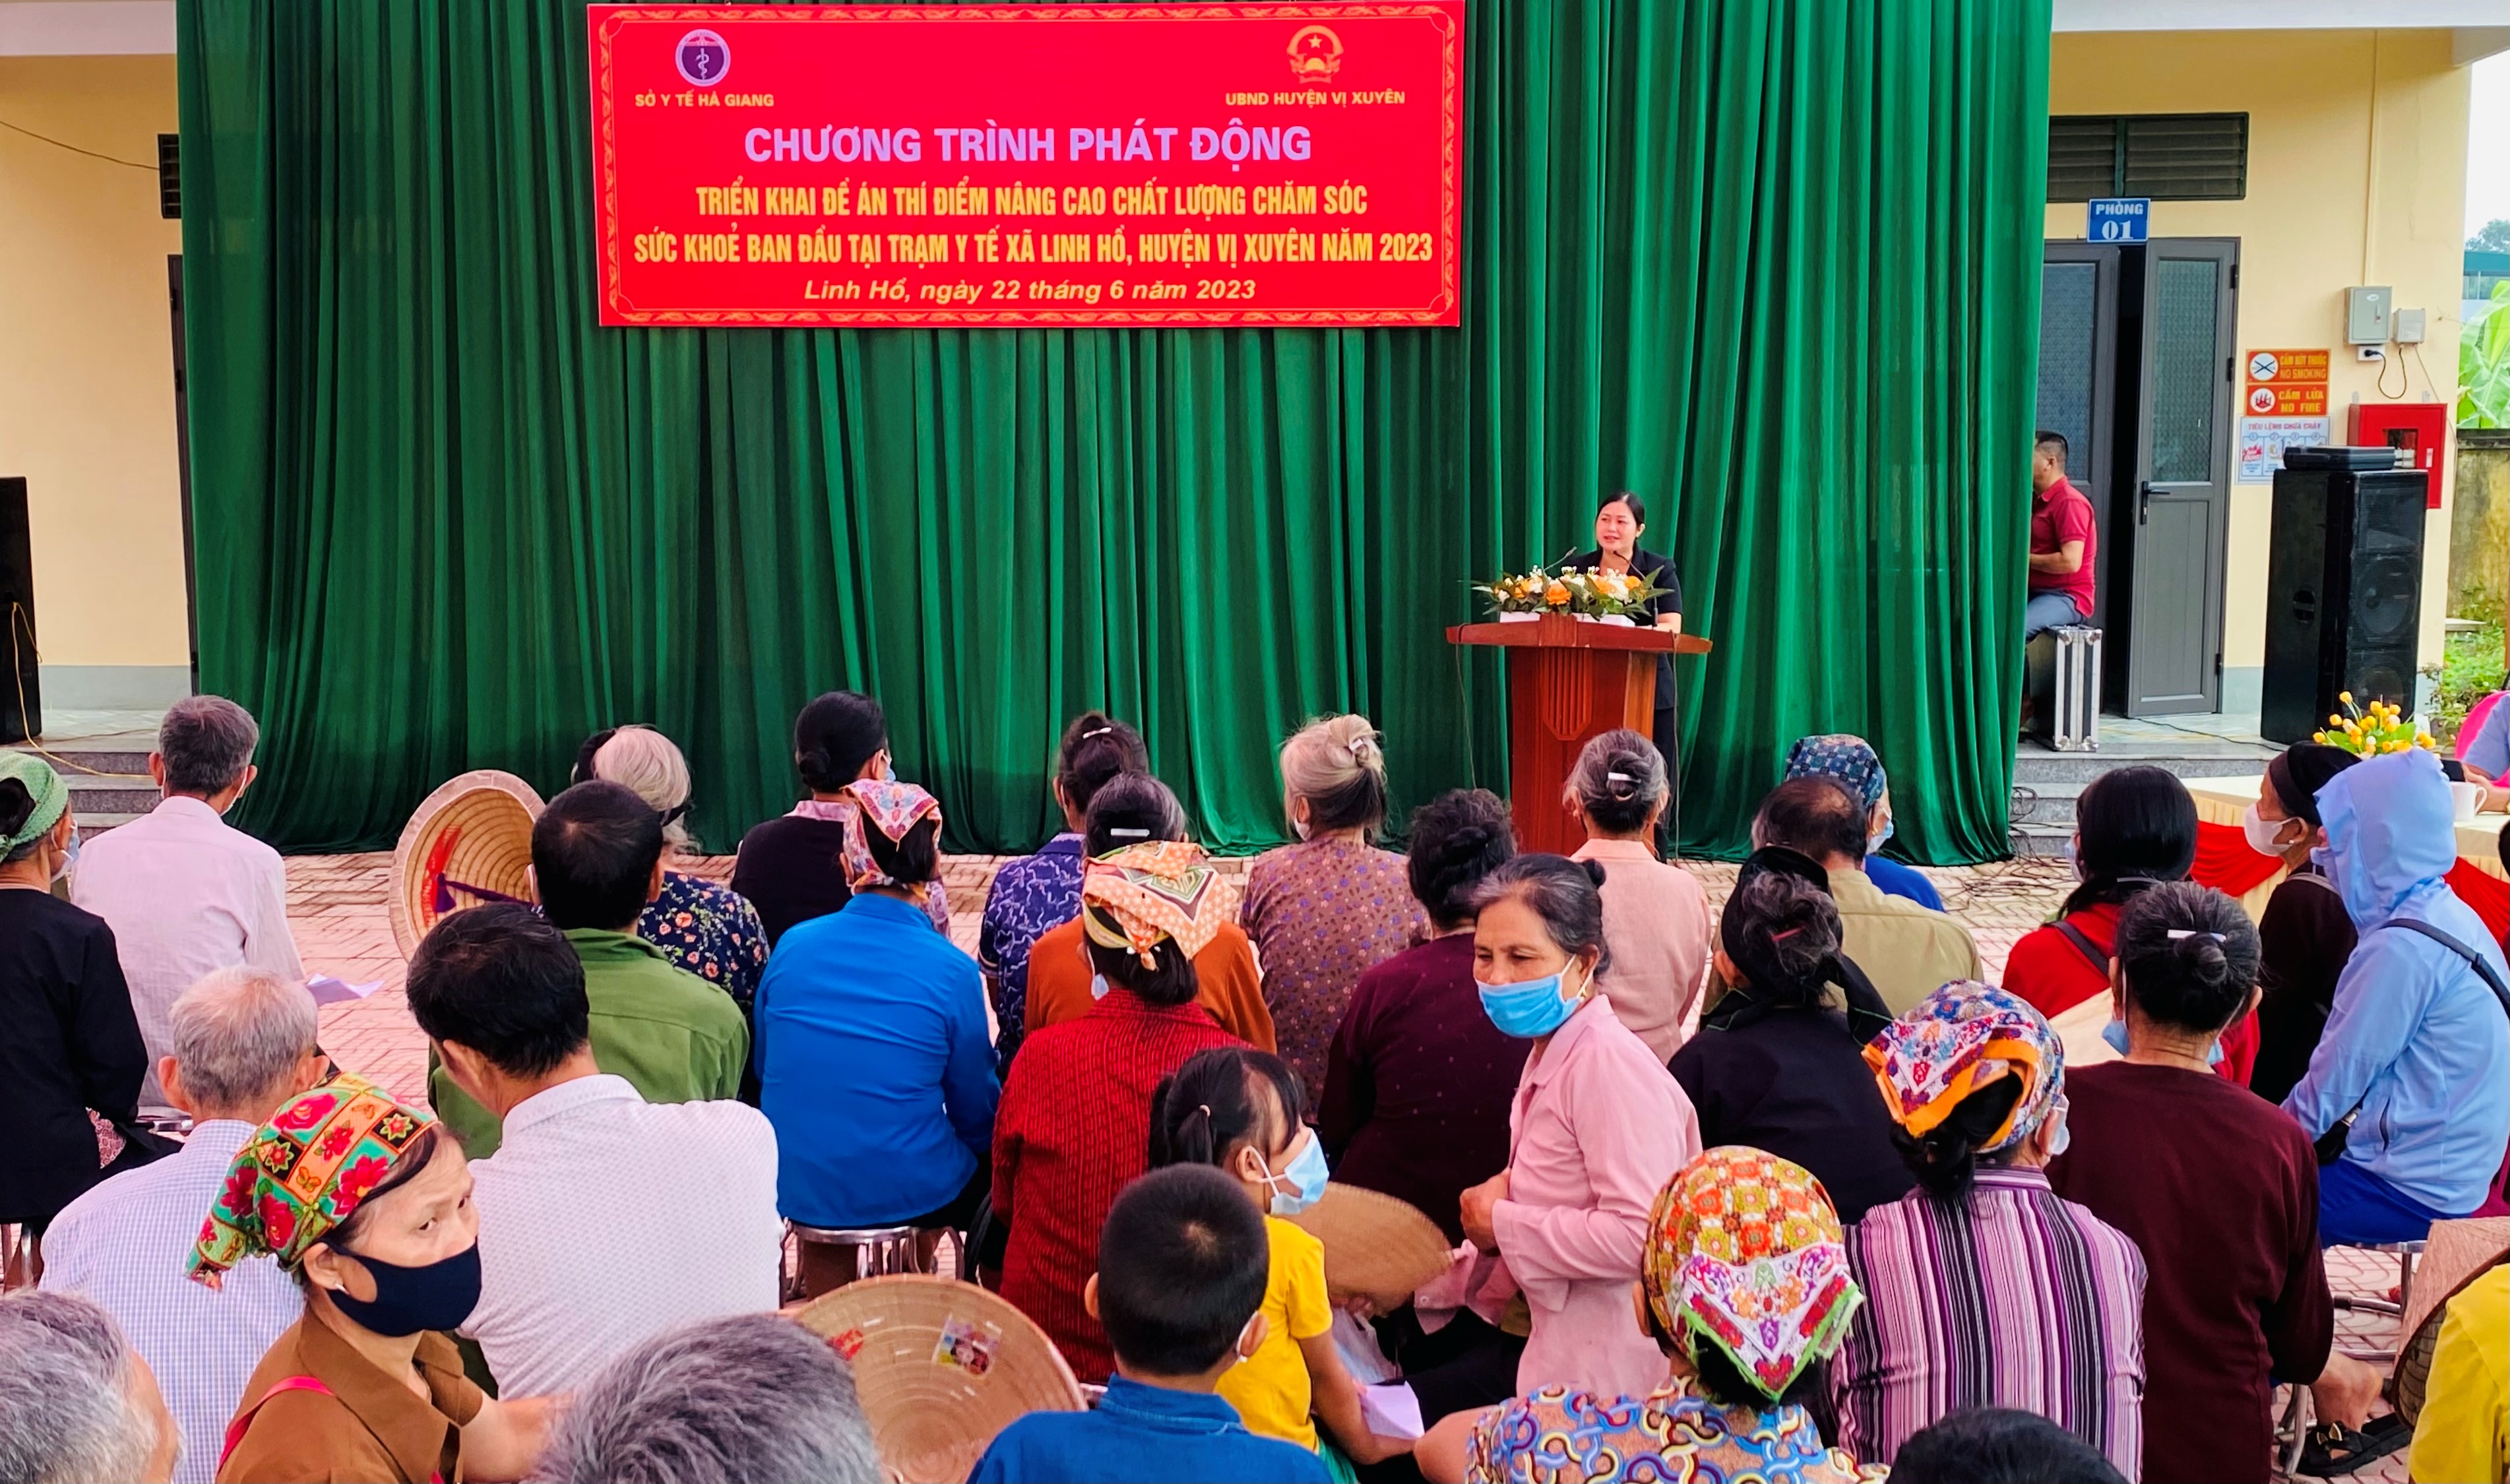 Chương trình phát động triển khai Đề án thí điểm nâng cao chất lượng chăm sóc sức khỏe ban đầu tại xã Linh Hồ